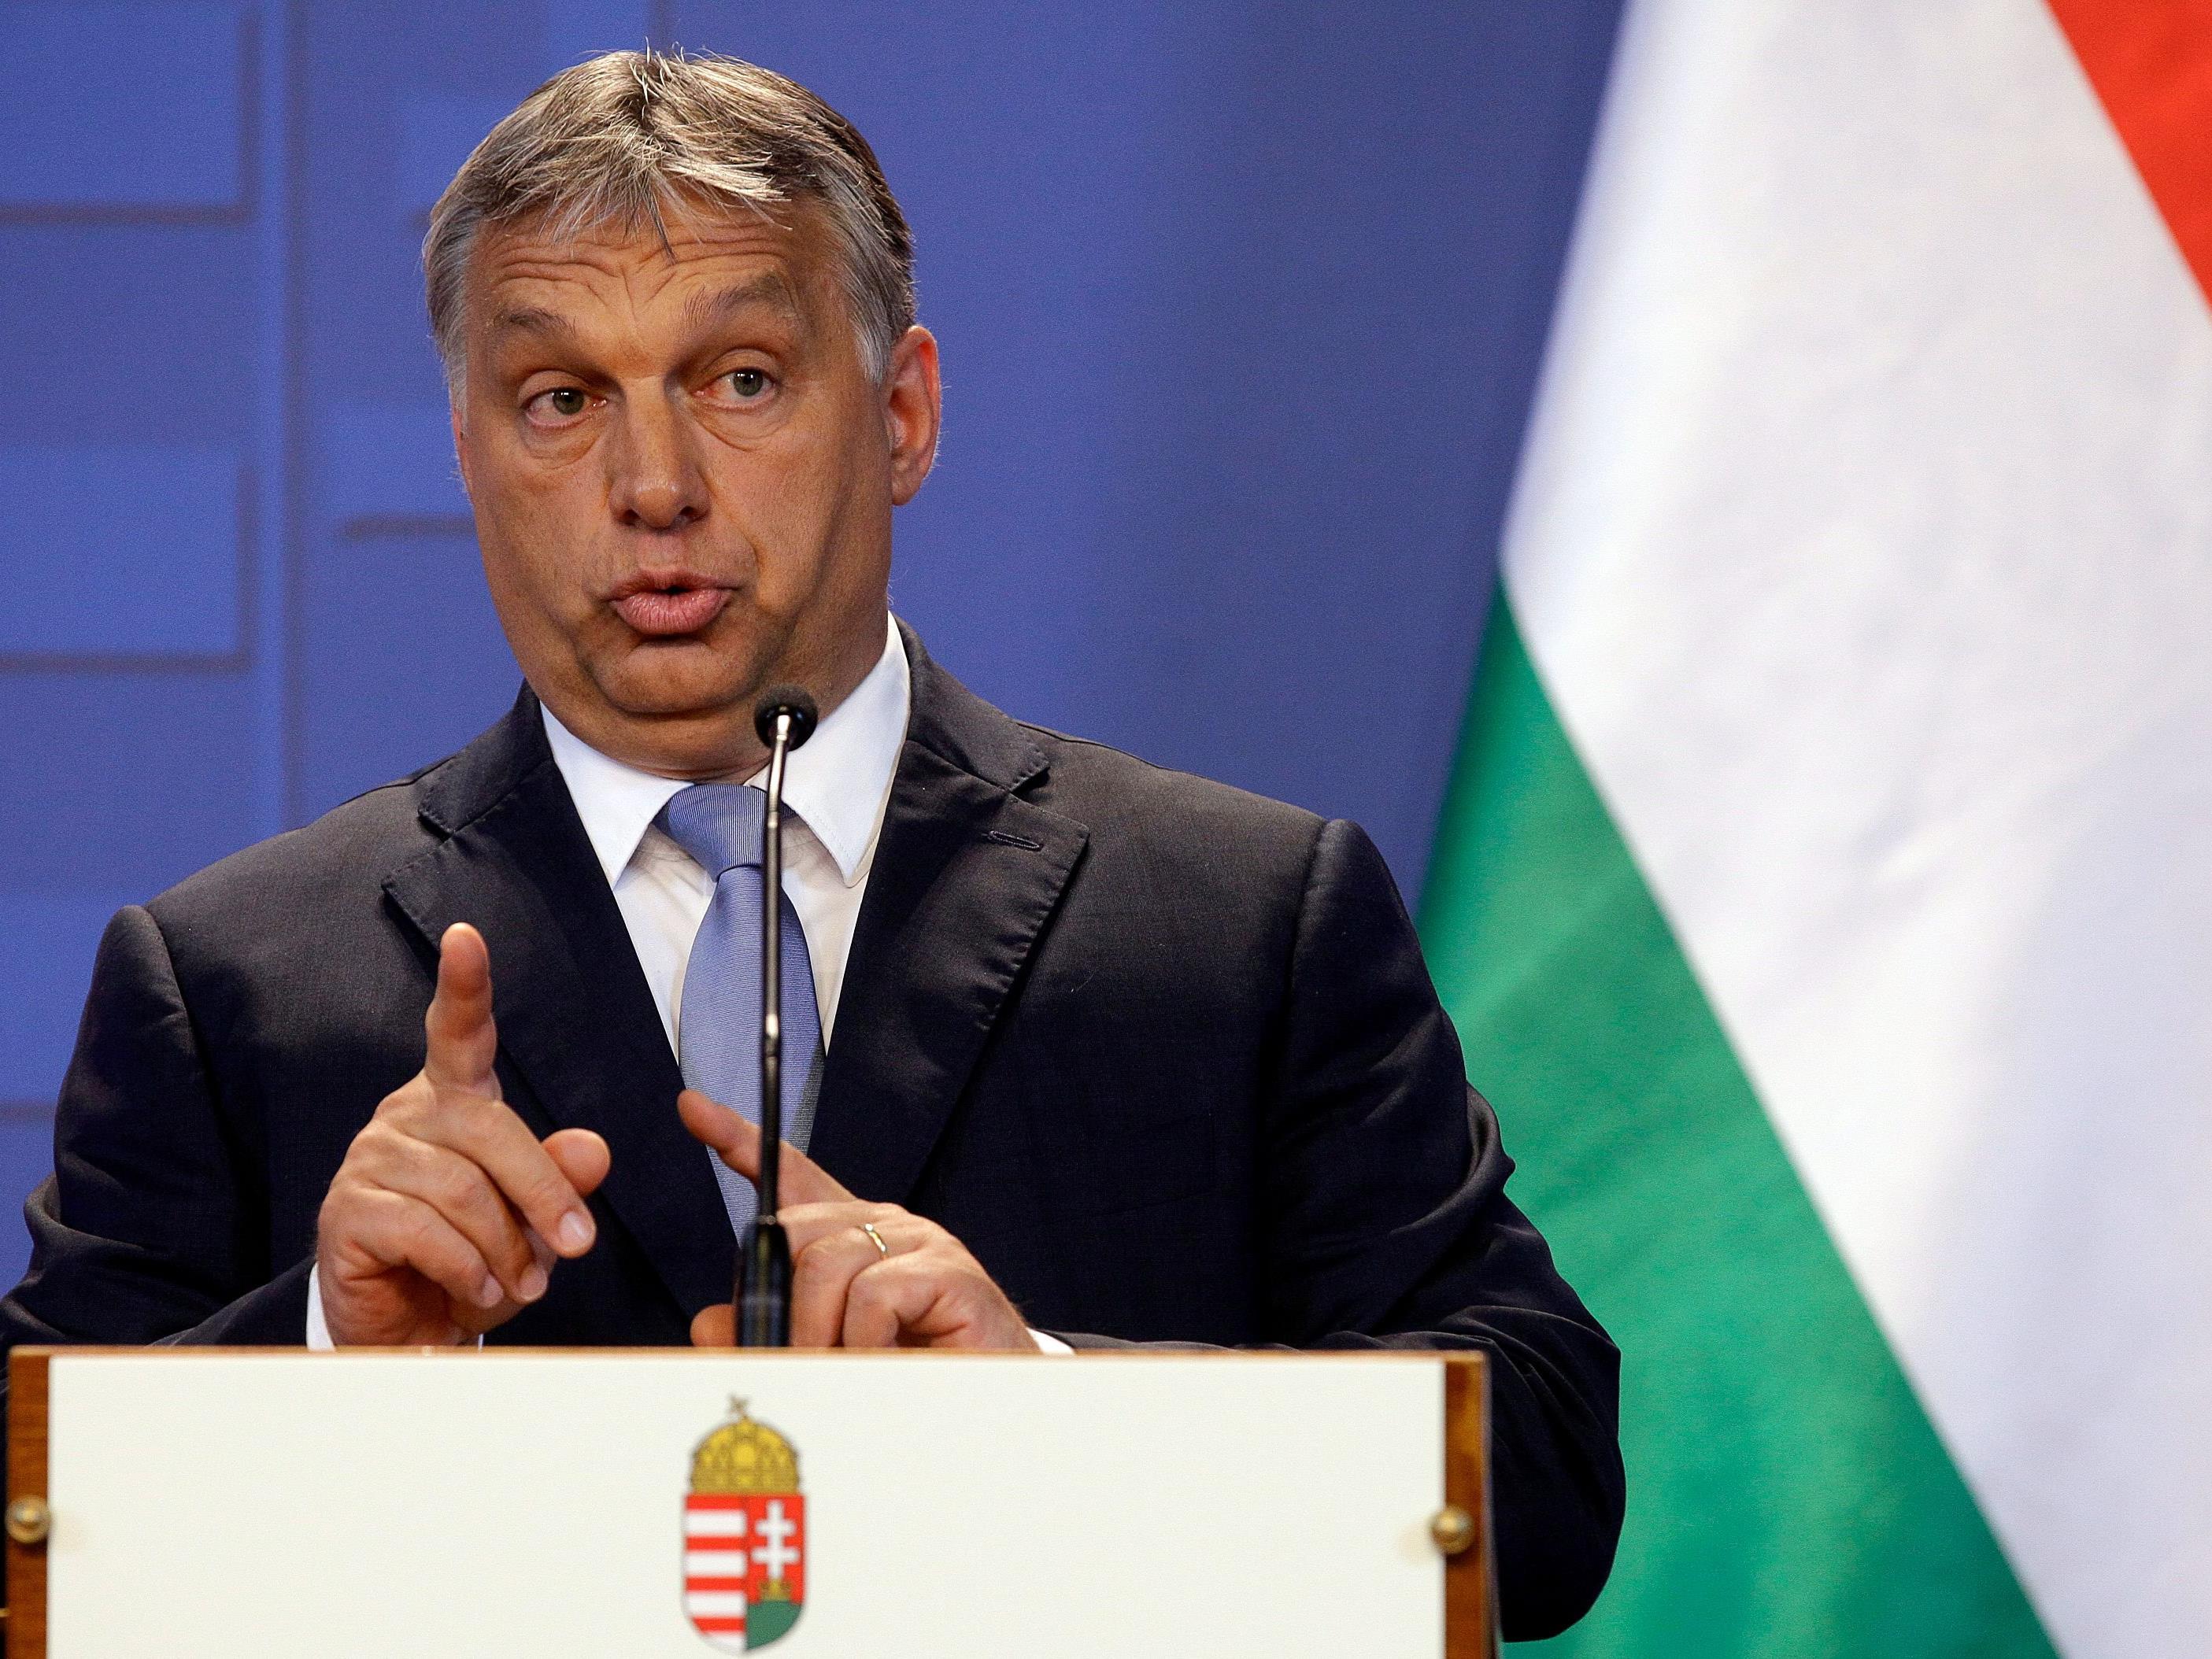 Ungarn verstoße mit seiner Flüchtlingspolitik gegen europäische Werte, so der Vorwurf.